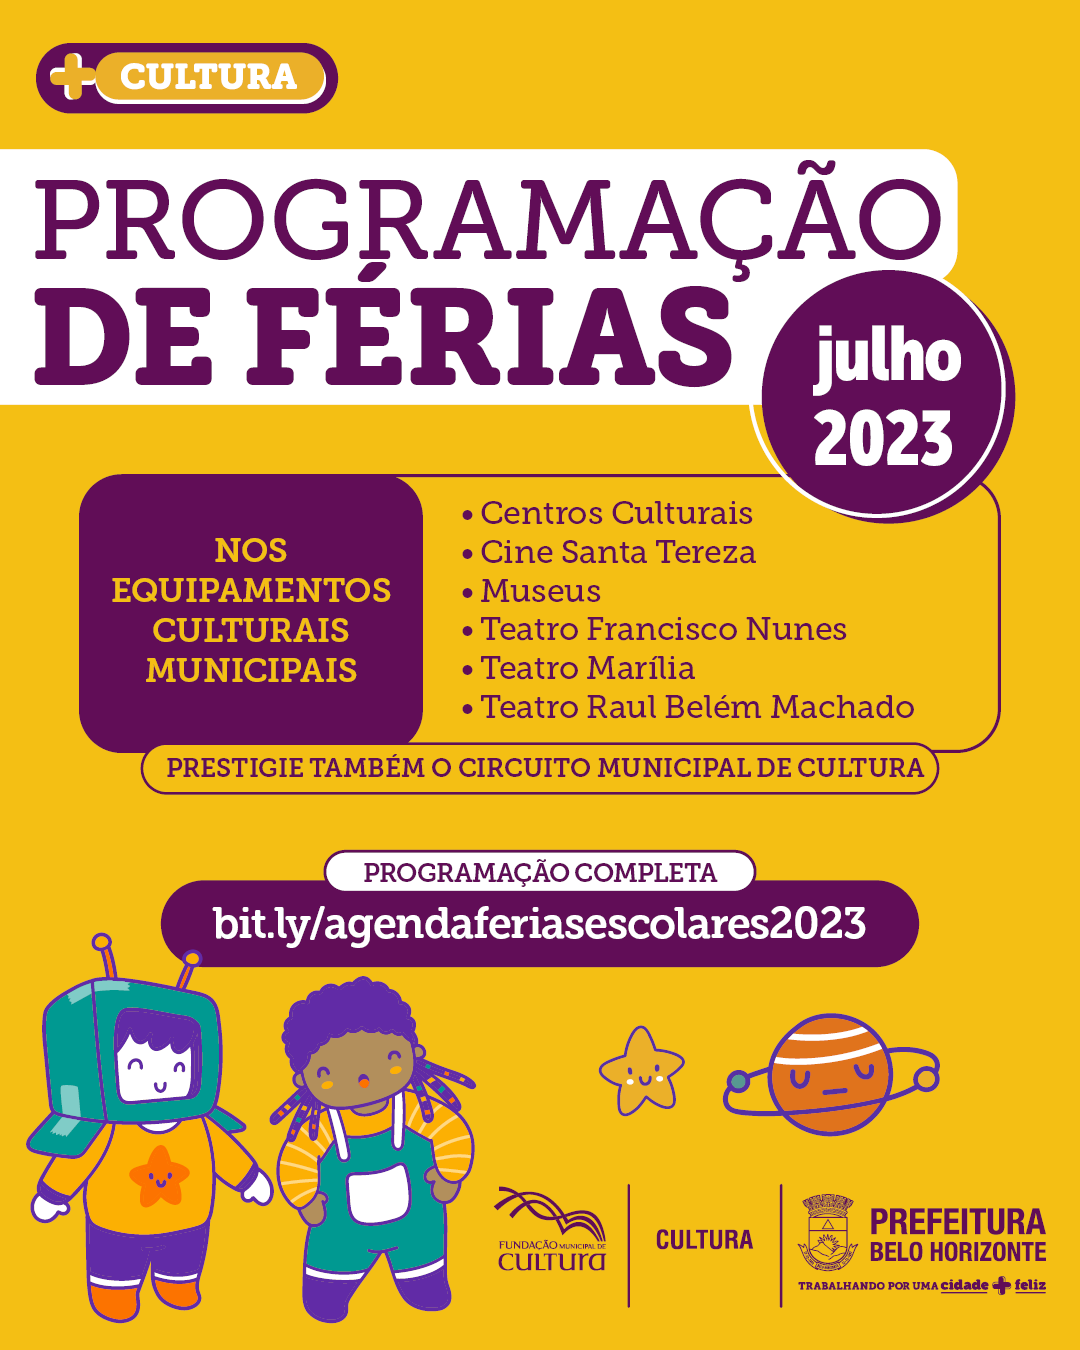 Prefeitura de São Bernardo oferece curso de Xadrez e Jogos de Damas  gratuitos - busca - São Bernardo